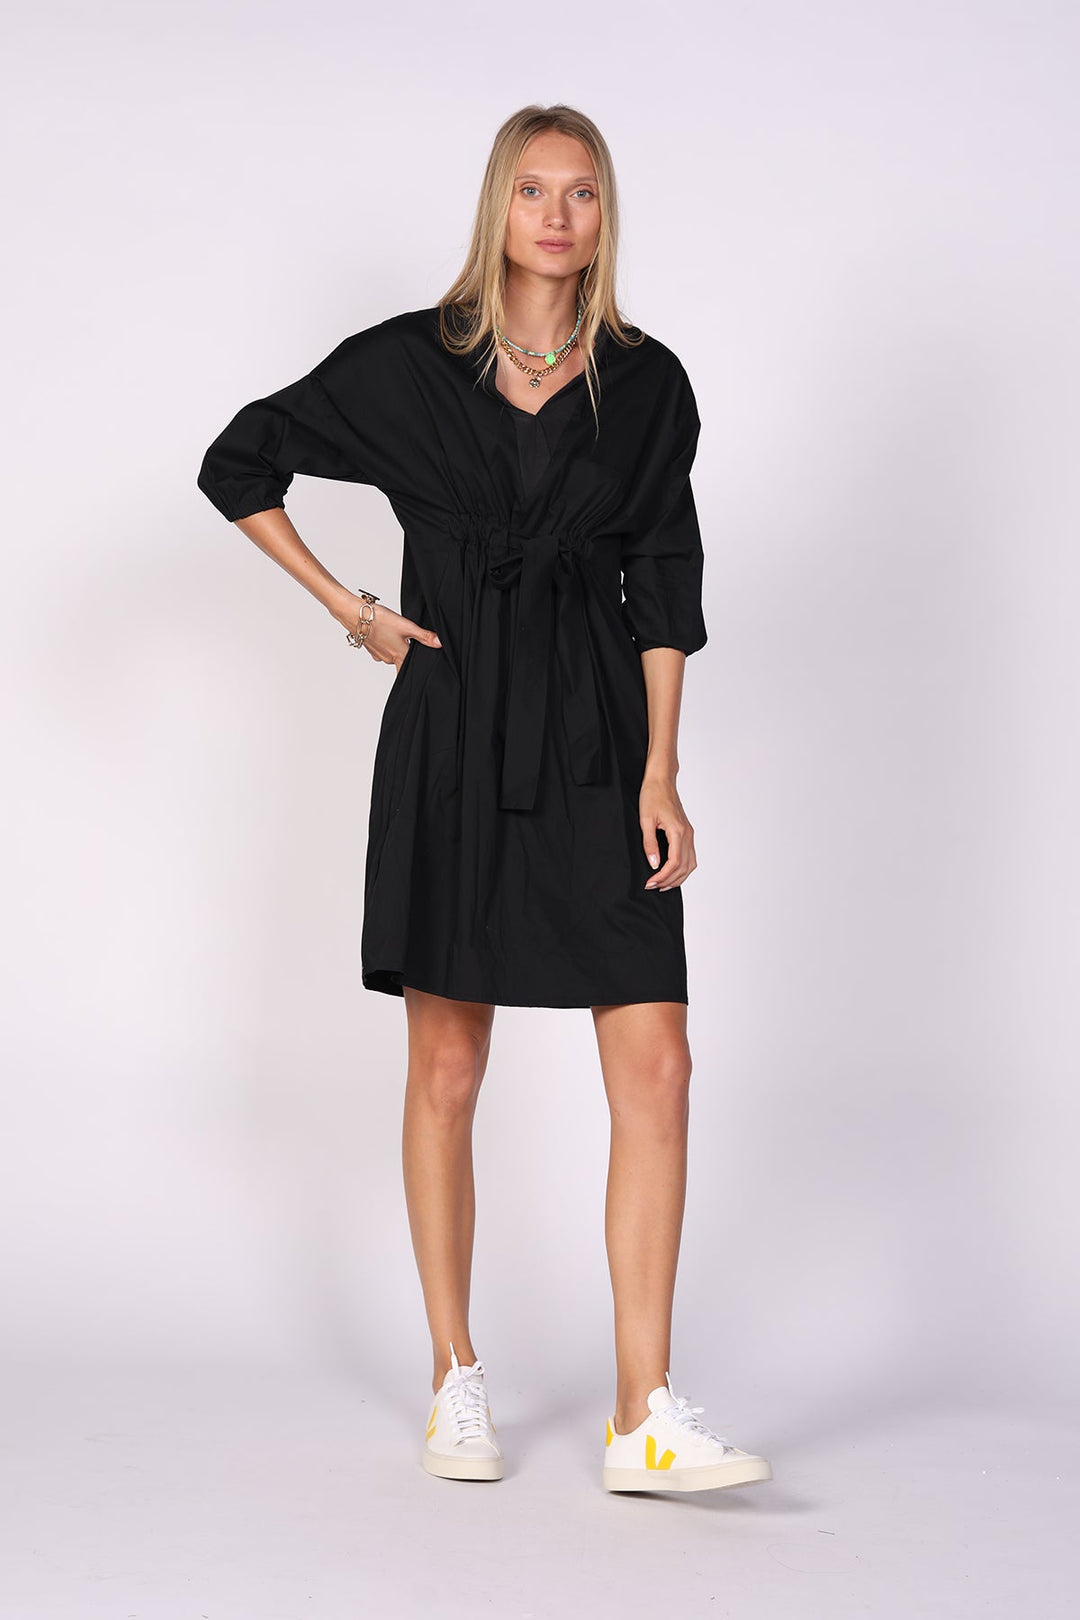 שמלת חורף אורגמי בצבע שחור - Ayelet Weinman